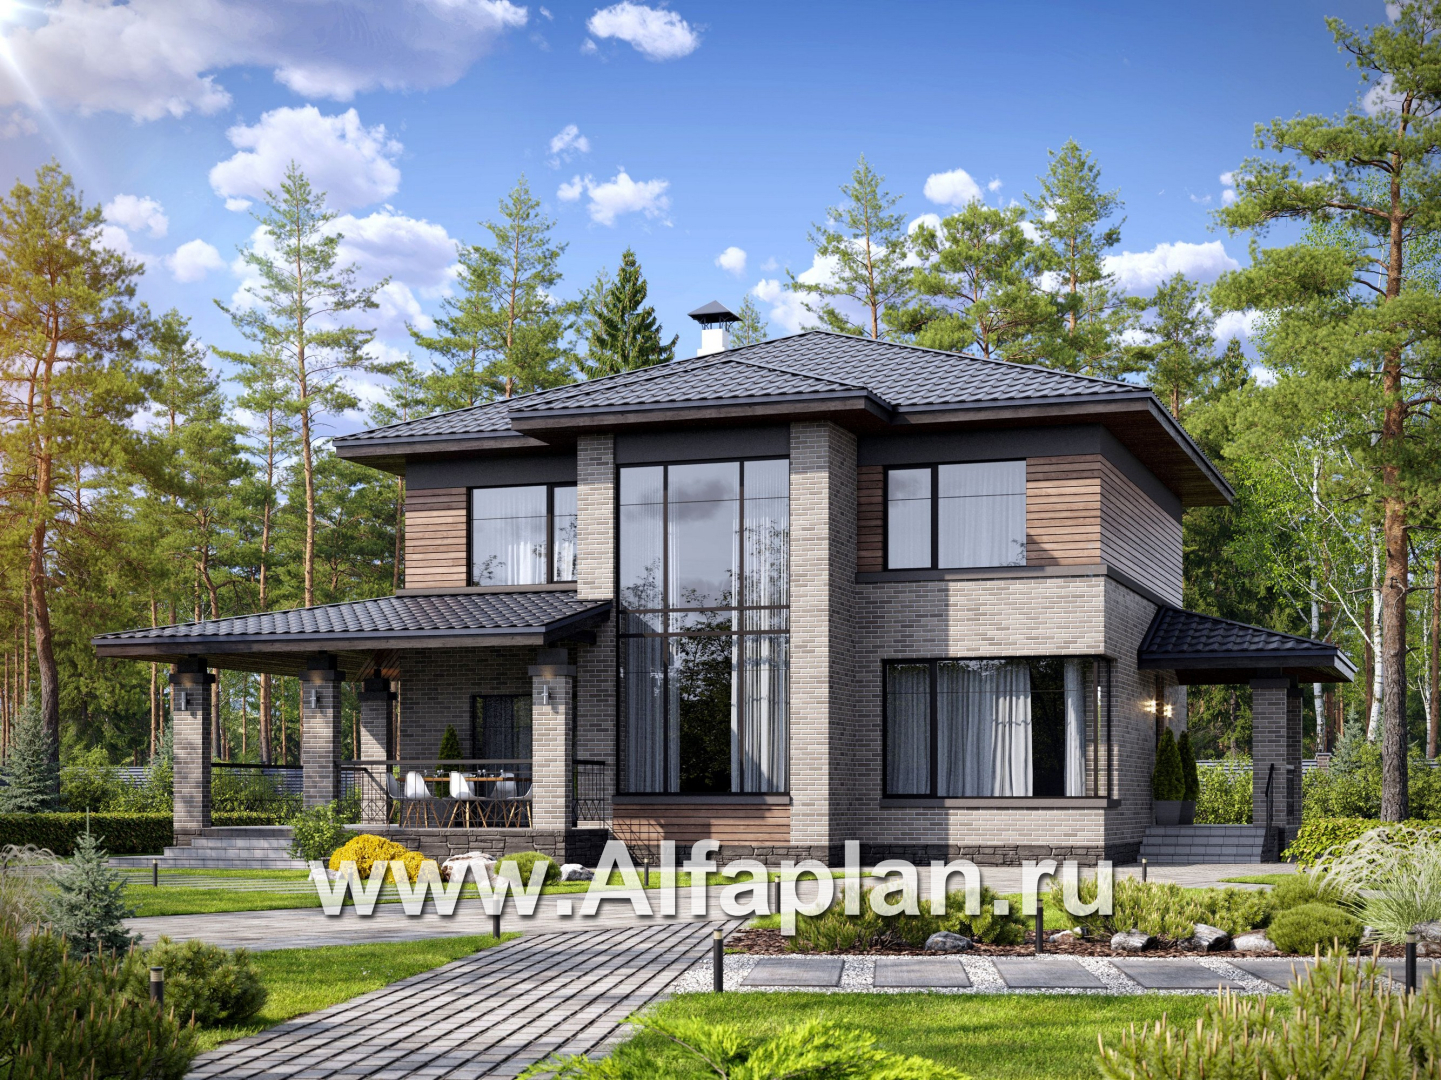 Проекты домов Альфаплан - "Компас" - проект двухэтажного коттеджа, план дома со вторым светом и террасой, в стиле Райта - основное изображение